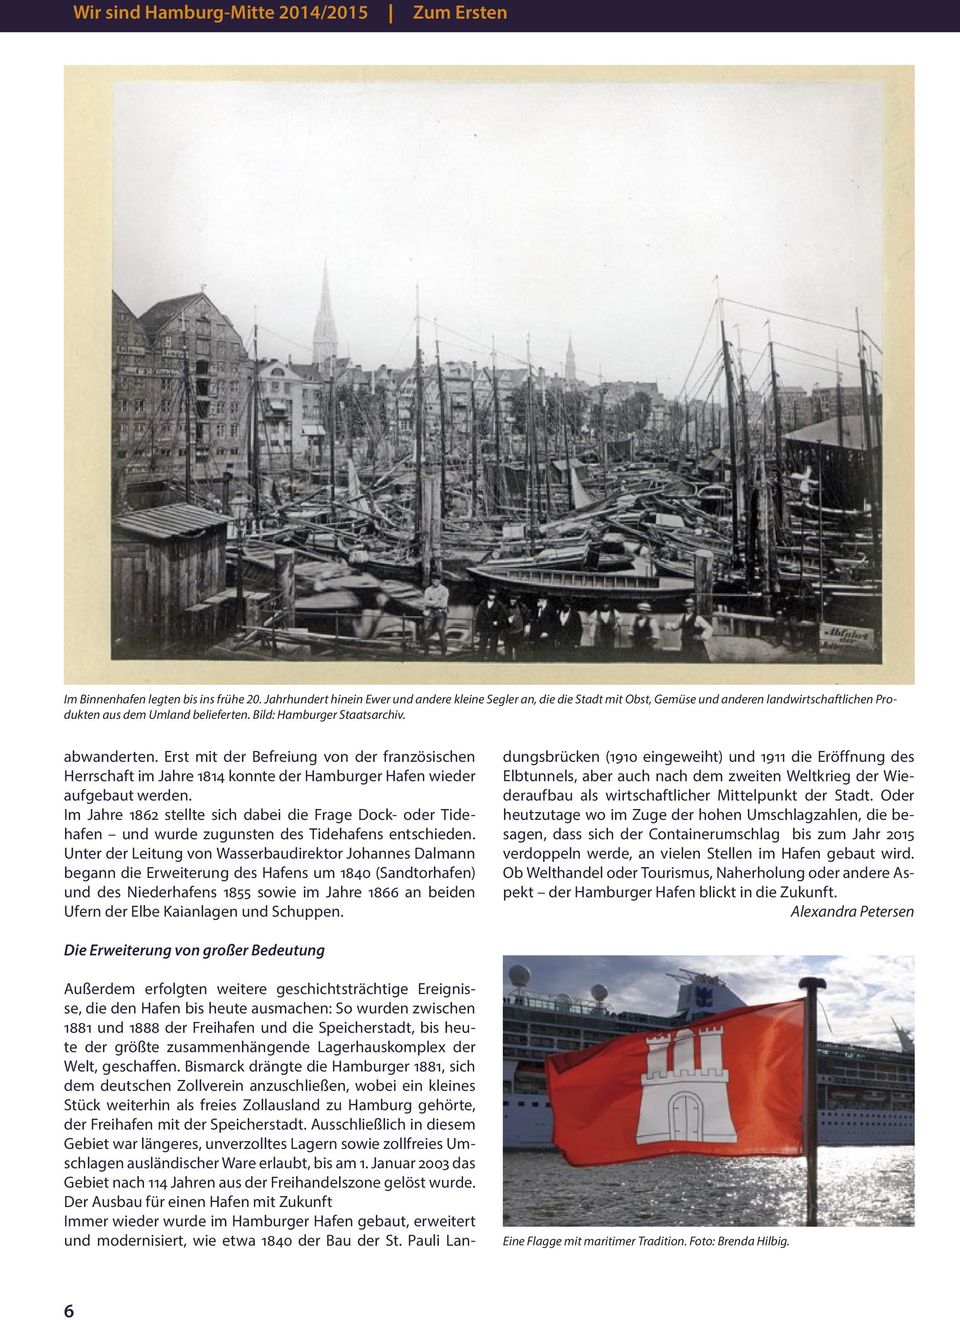 Erst mit der Befreiung von der französischen Herrschaft im Jahre 1814 konnte der Hamburger Hafen wieder aufgebaut werden.